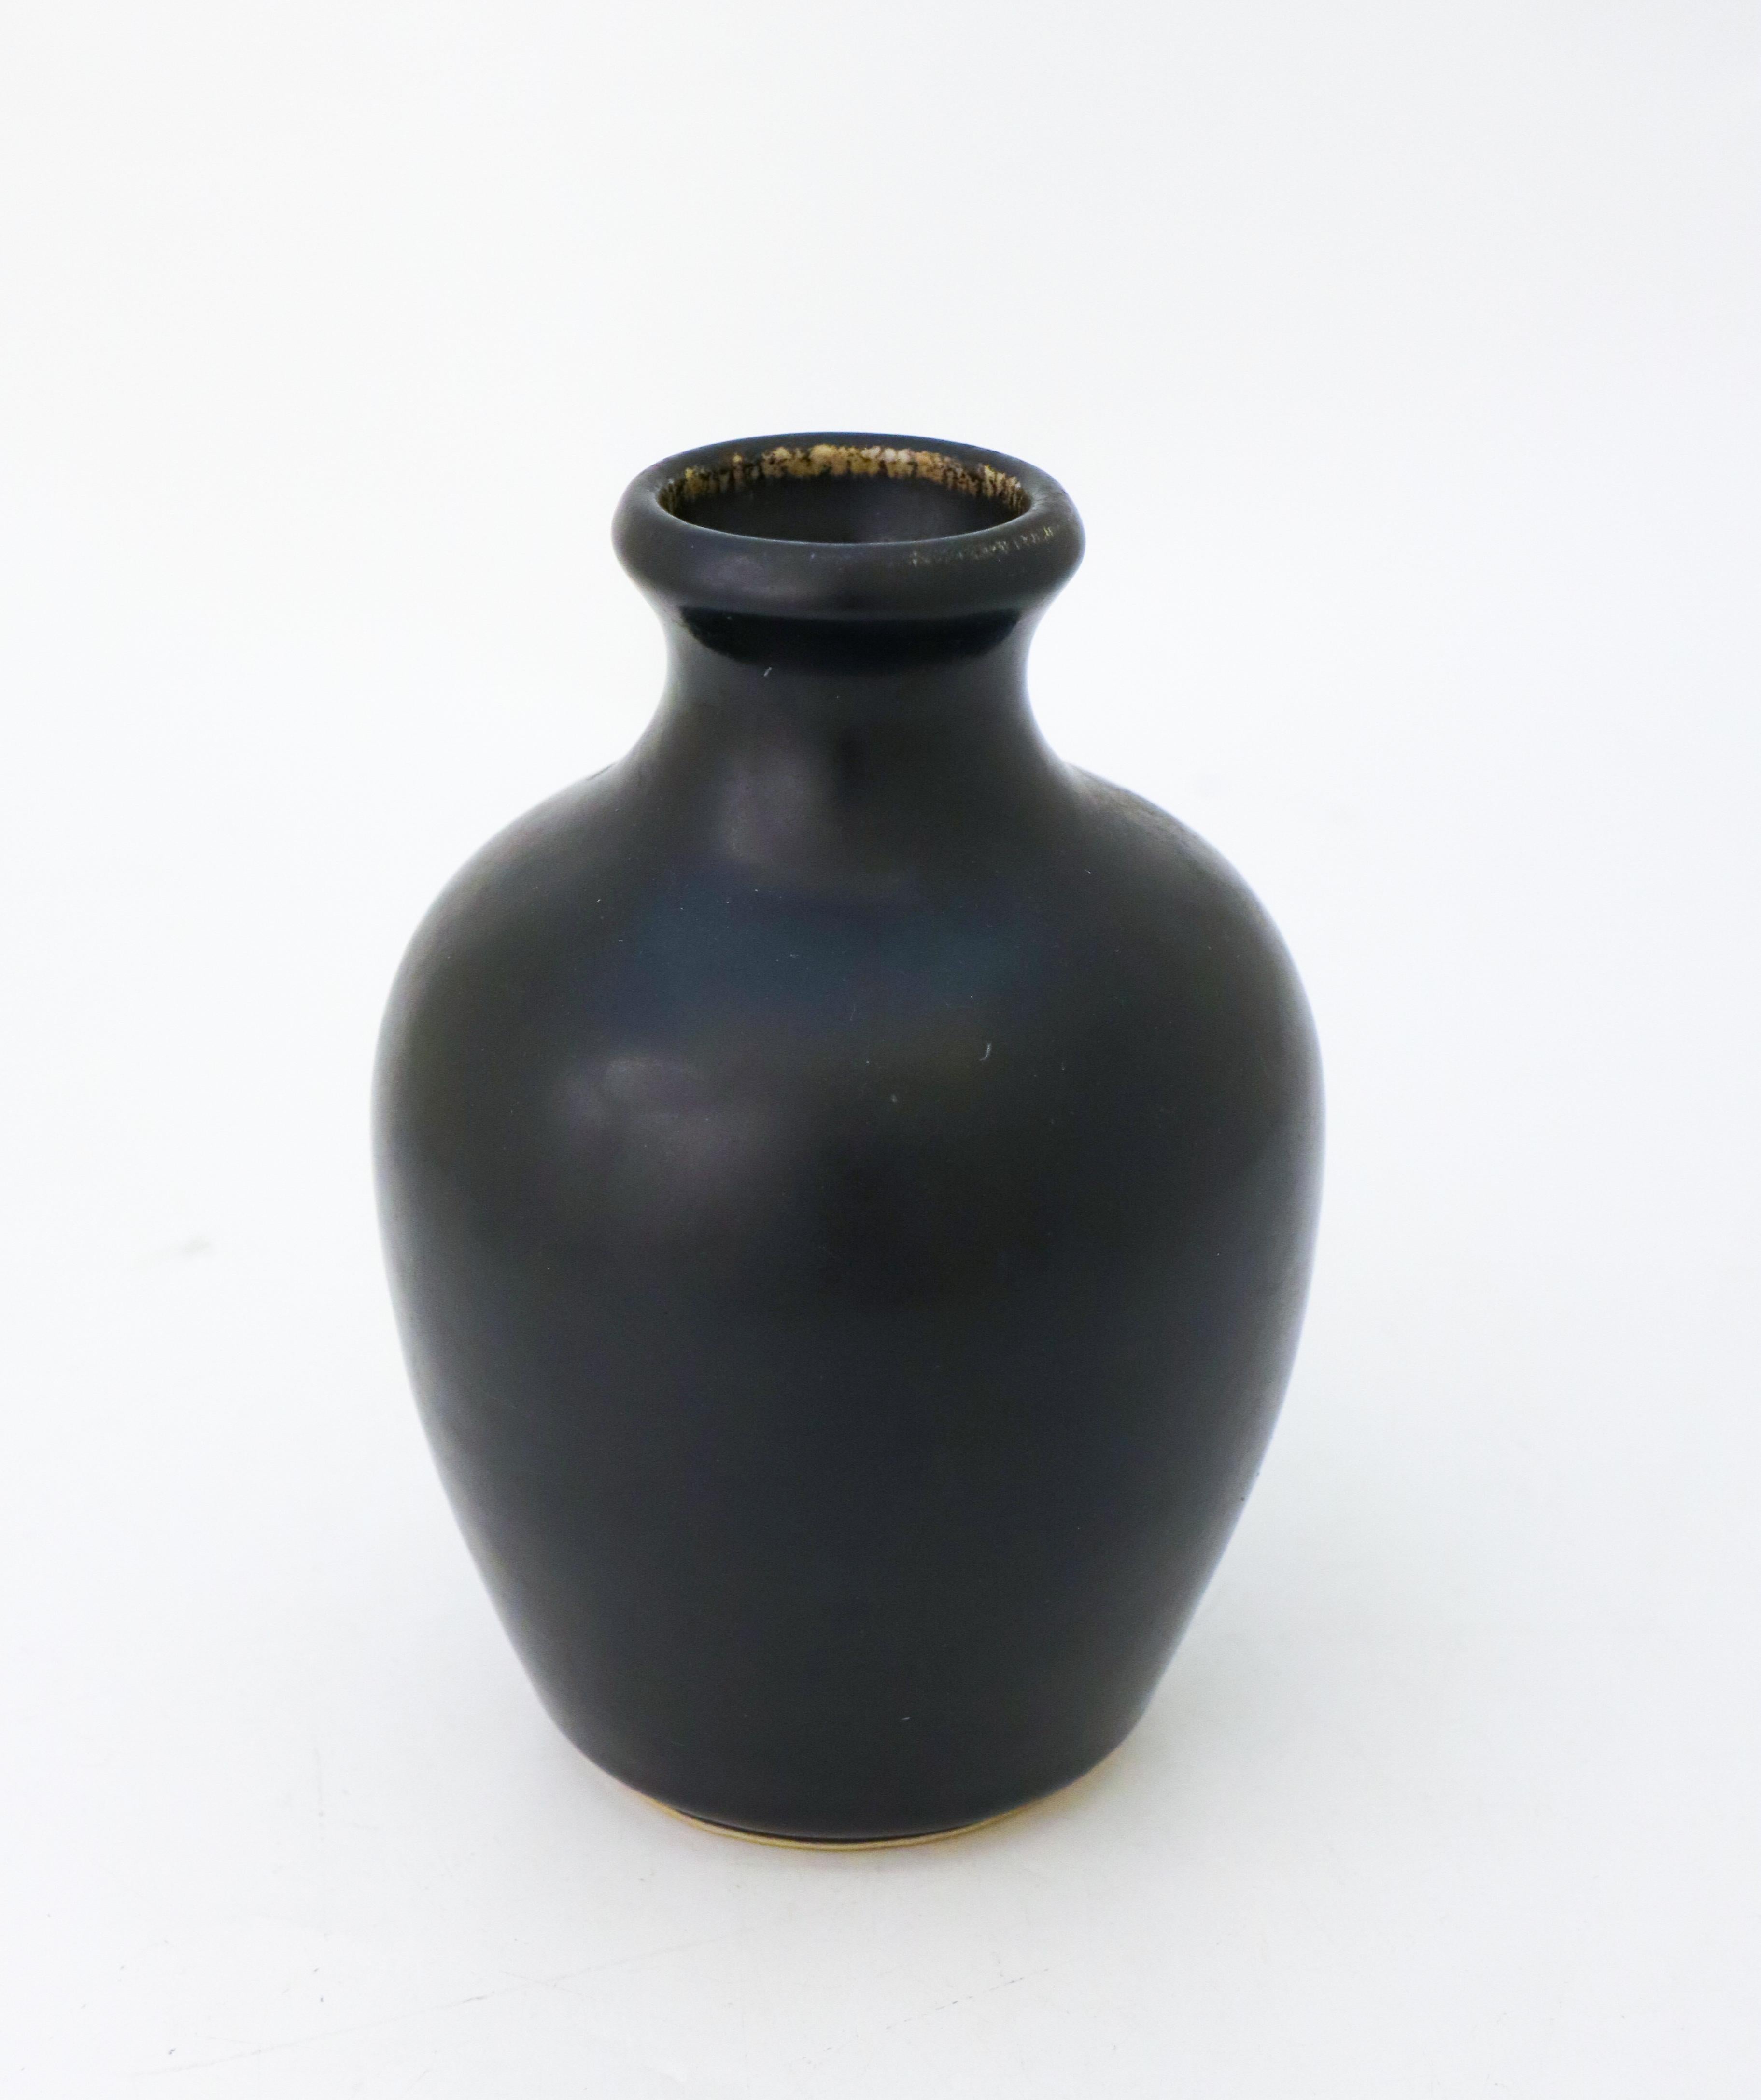 Ce vase noir, conçu par Carl-Harry Stålhane à Rörstrand Atelier, mesure 16 cm de haut. Il est marqué comme étant de première qualité et est en excellent état, à l'exception de quelques rayures mineures. 

Carl-Harry Stålhane est l'un des grands noms